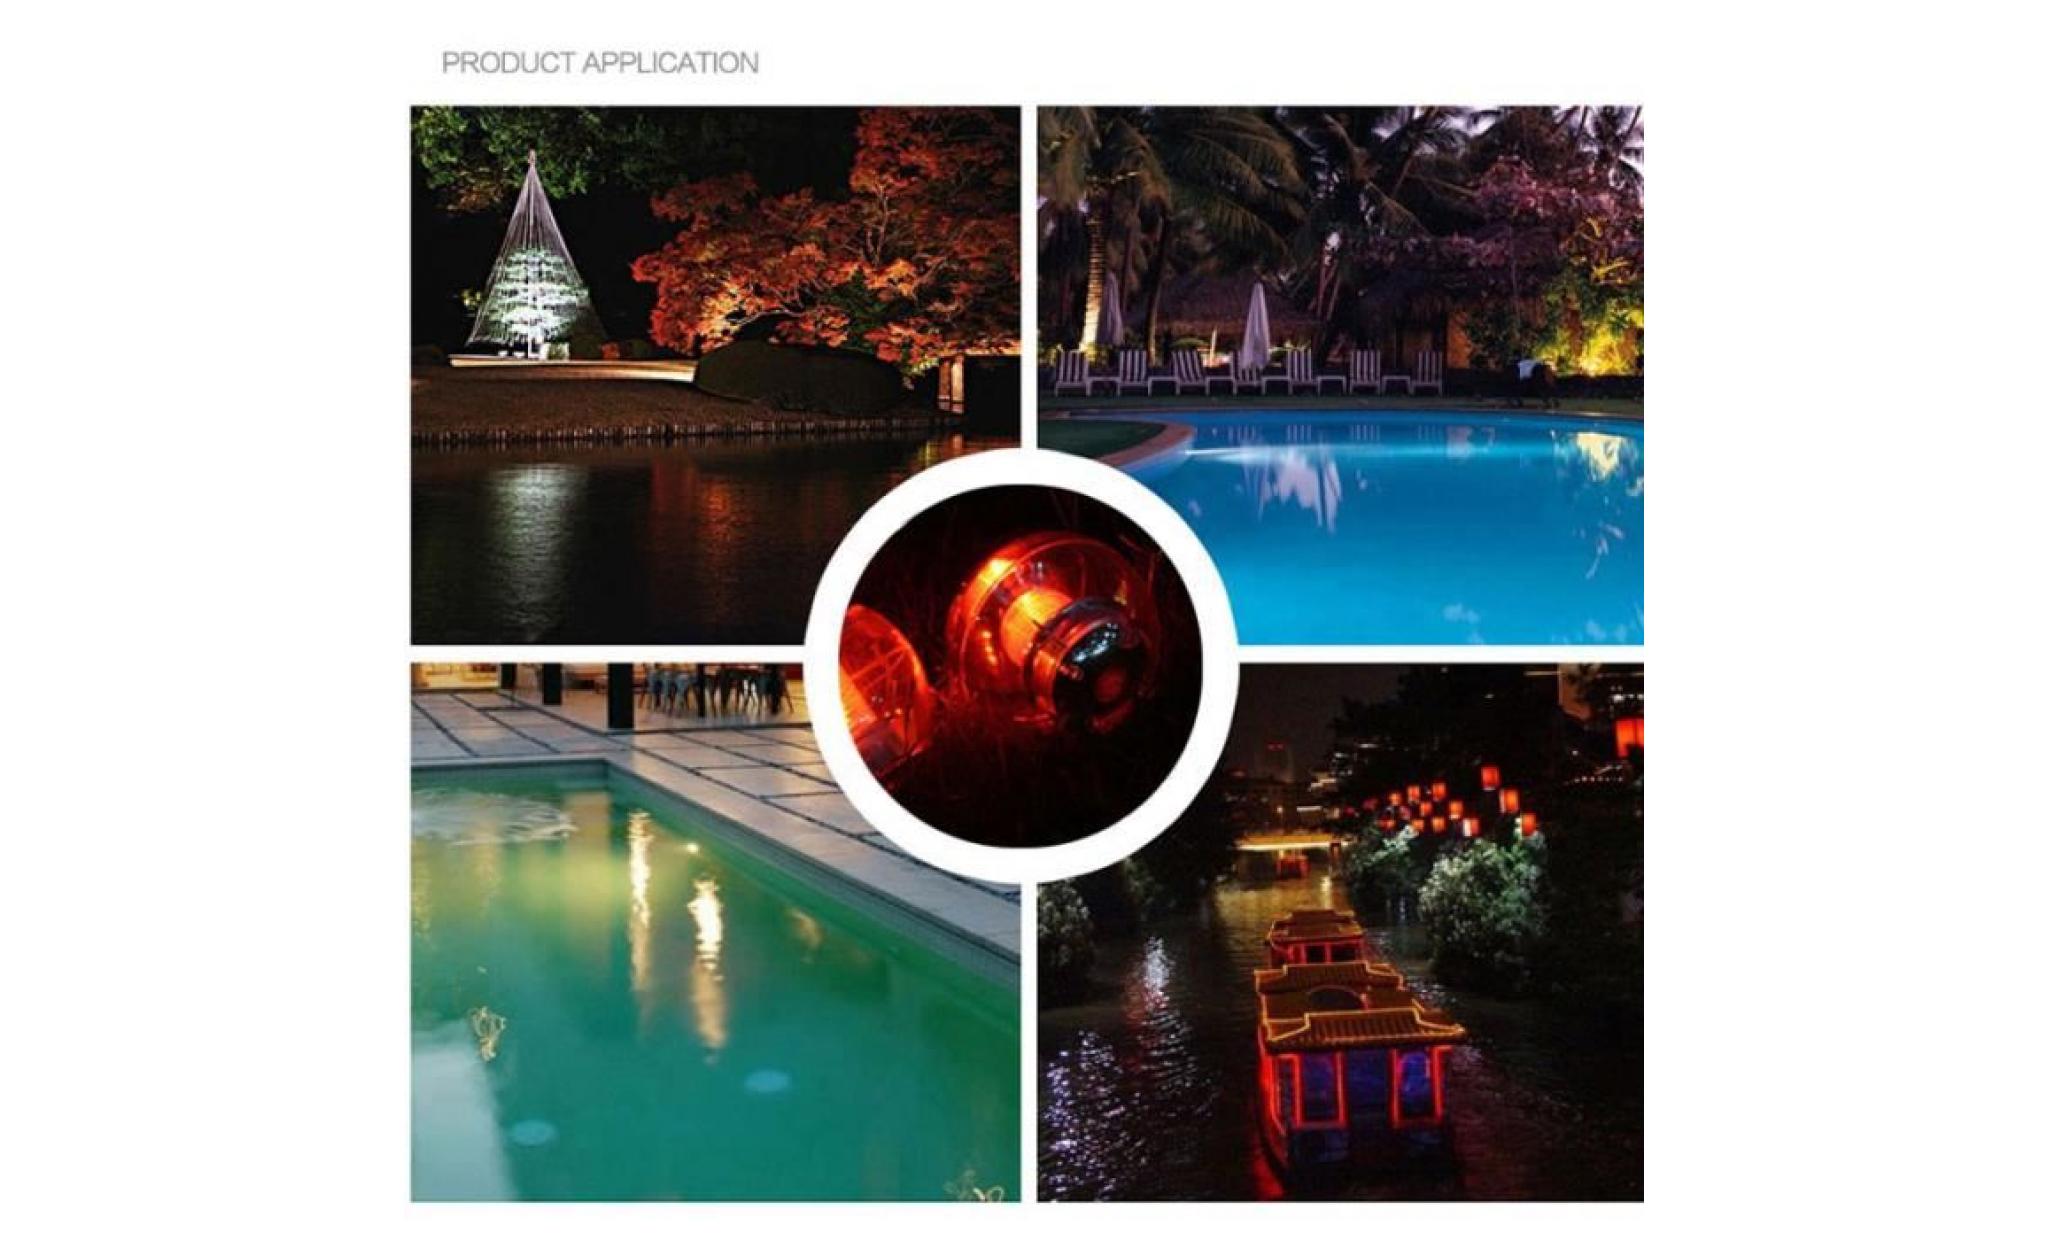 Éclairage de piscine imperméable à l'eau de jardin changement automatique de couleur solaire poudre flottante lumière de nuit pas cher